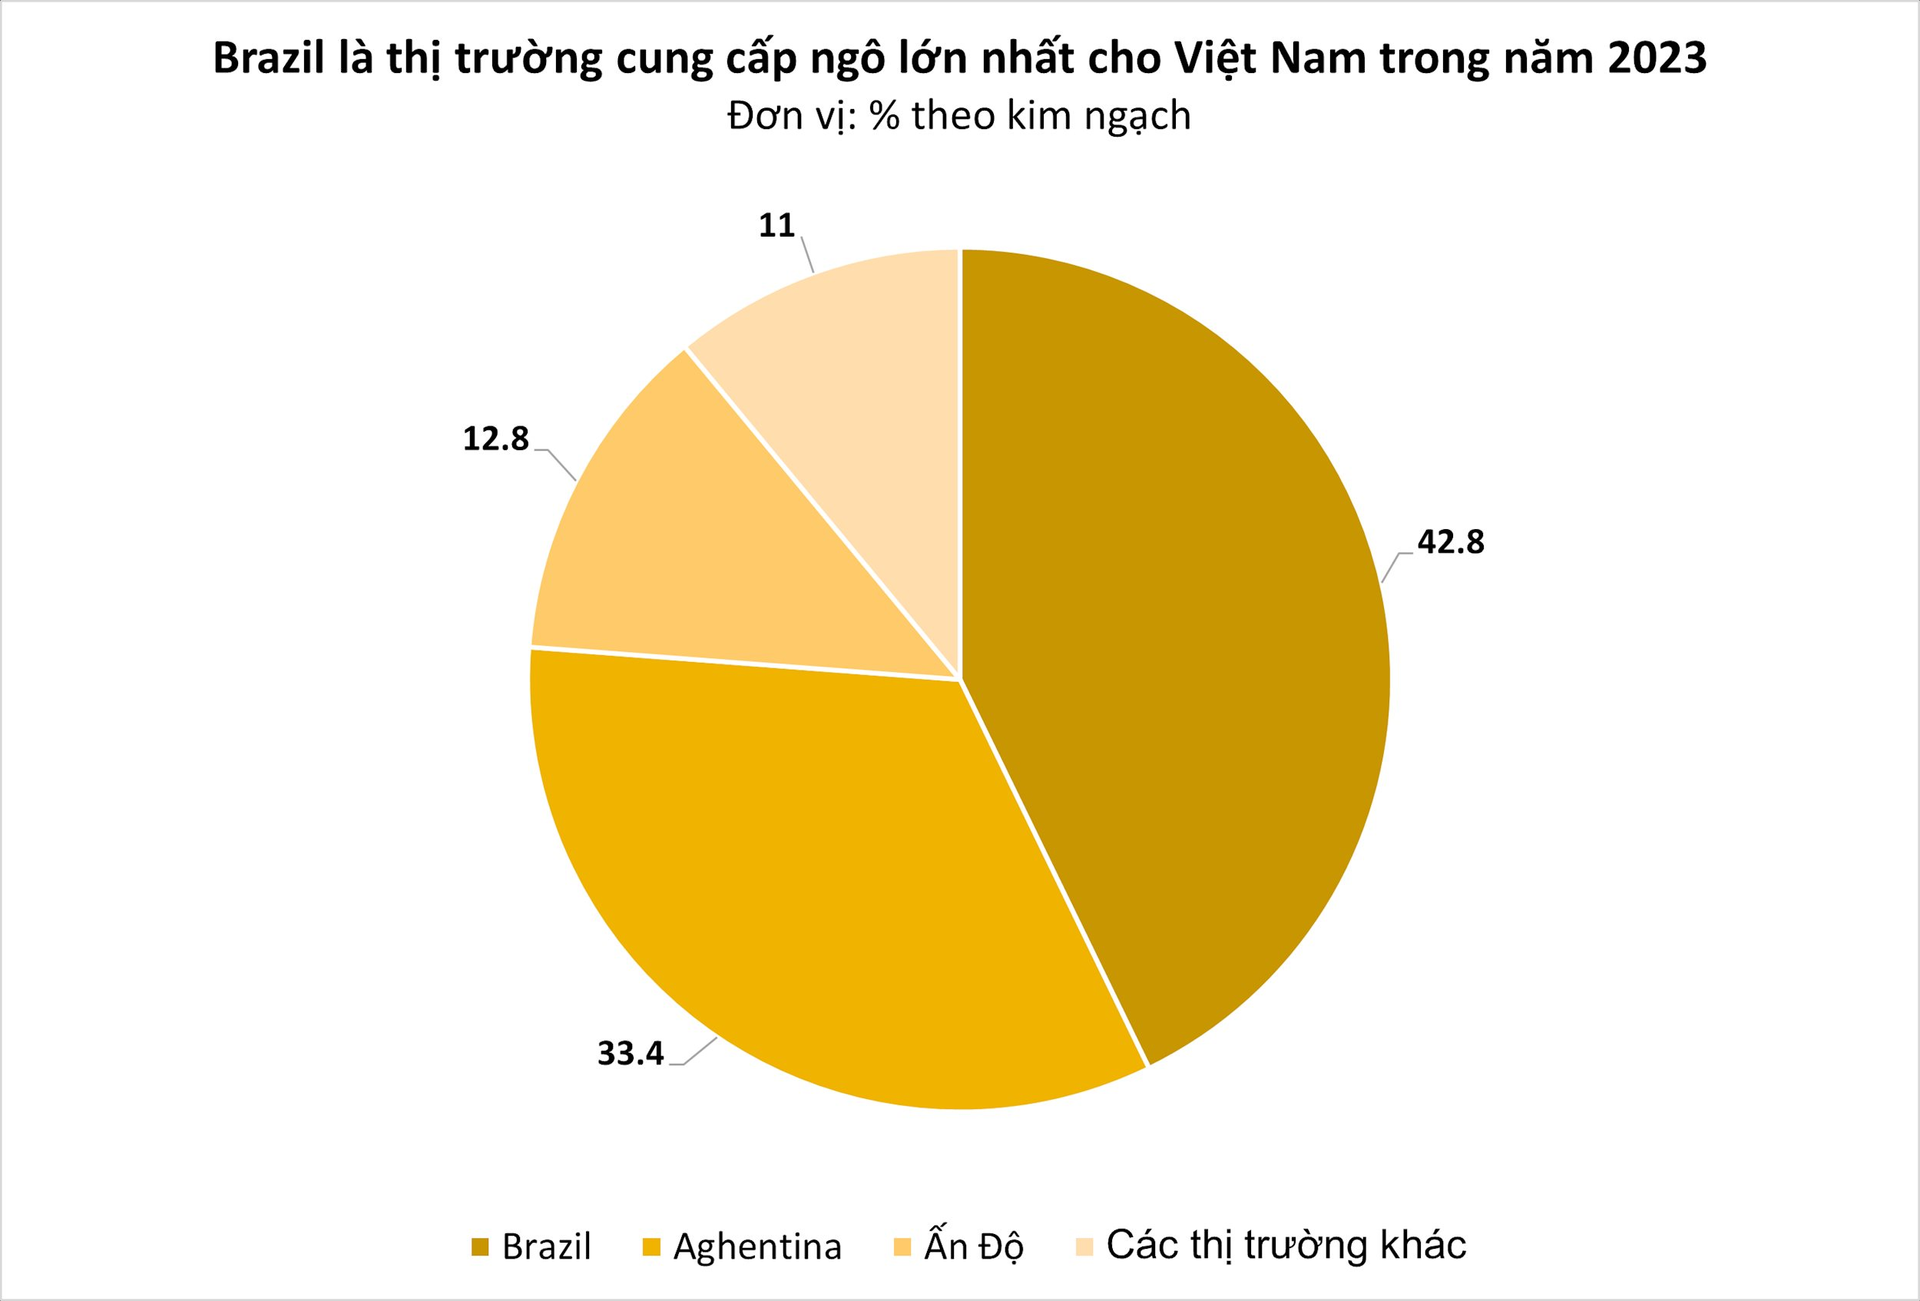 Không thiếu đất trồng, một loại hạt vẫn liên tục tràn vào Việt Nam với giá siêu rẻ: Brazil là tay buôn lớn nhất, nước ta nhập khẩu top đầu thế giới - Ảnh 3.